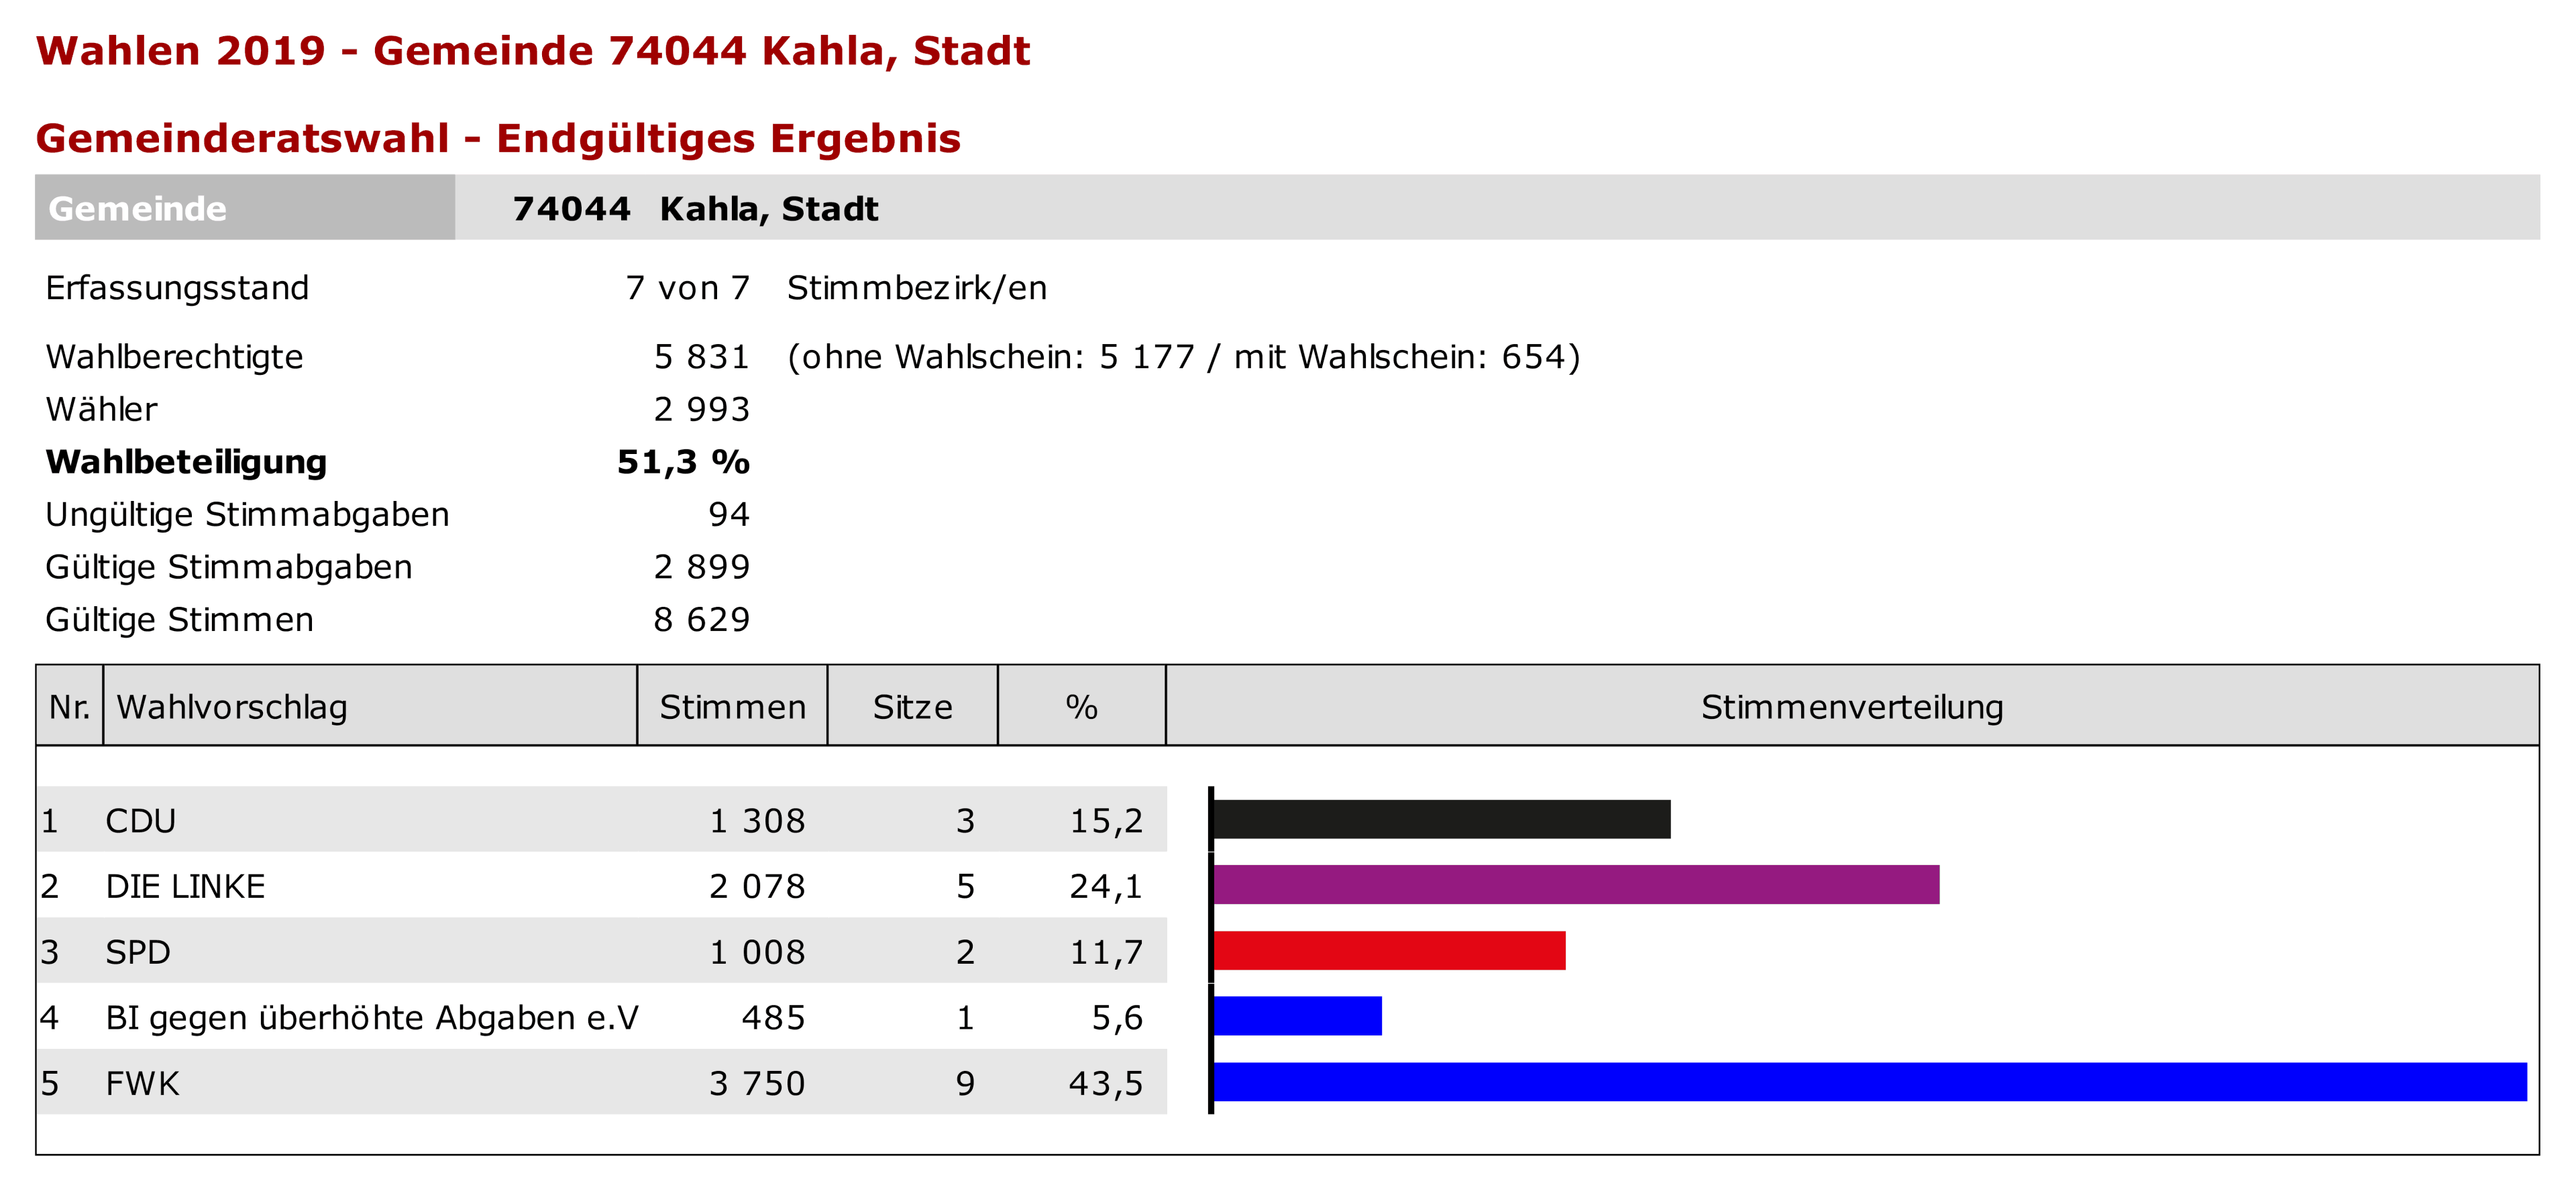 Gemeinderat Sitzverteilung Stadt Kahla.png